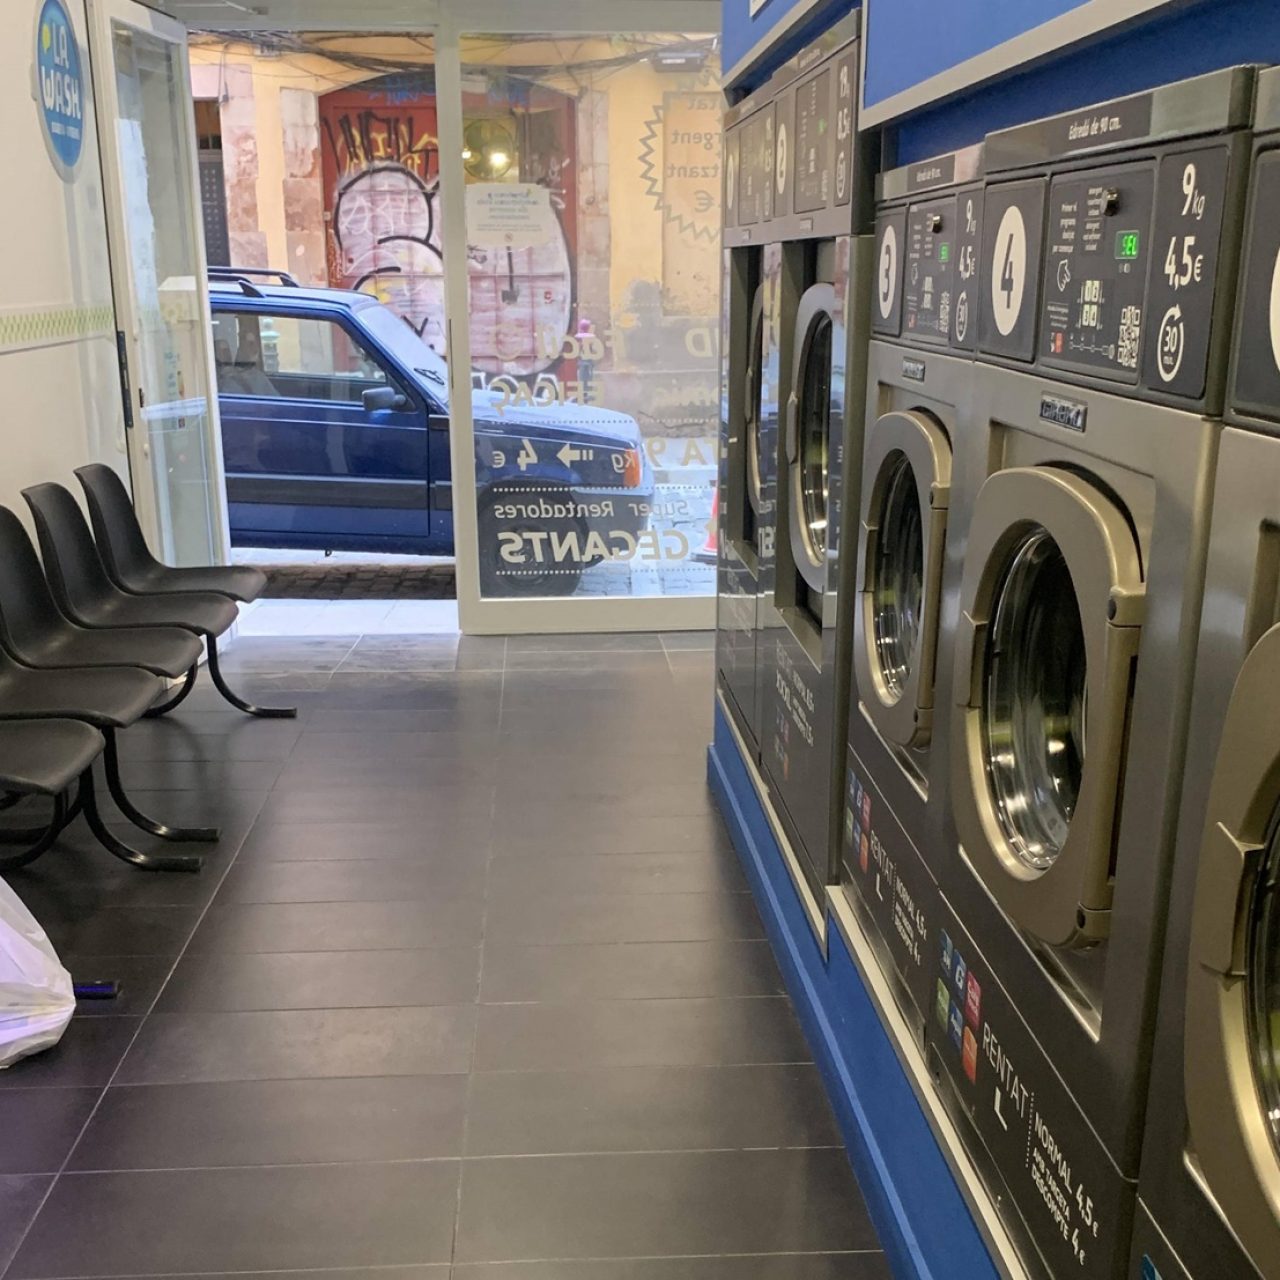 servicio-lavanderia-la-wash-portal-nou-7-barcelona